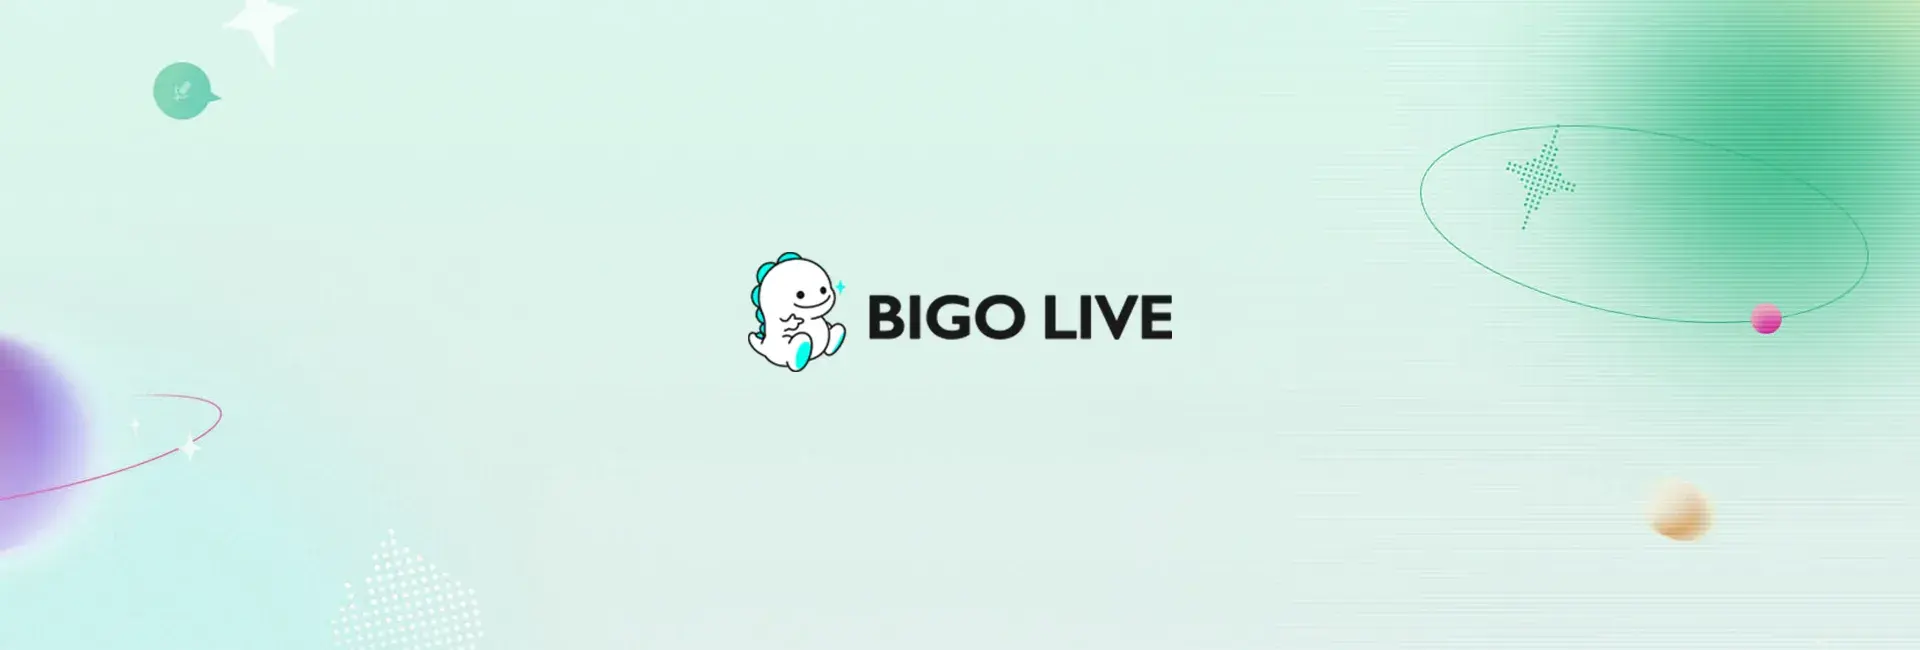 Bigo Live - 5150 Diamonds (Global)	